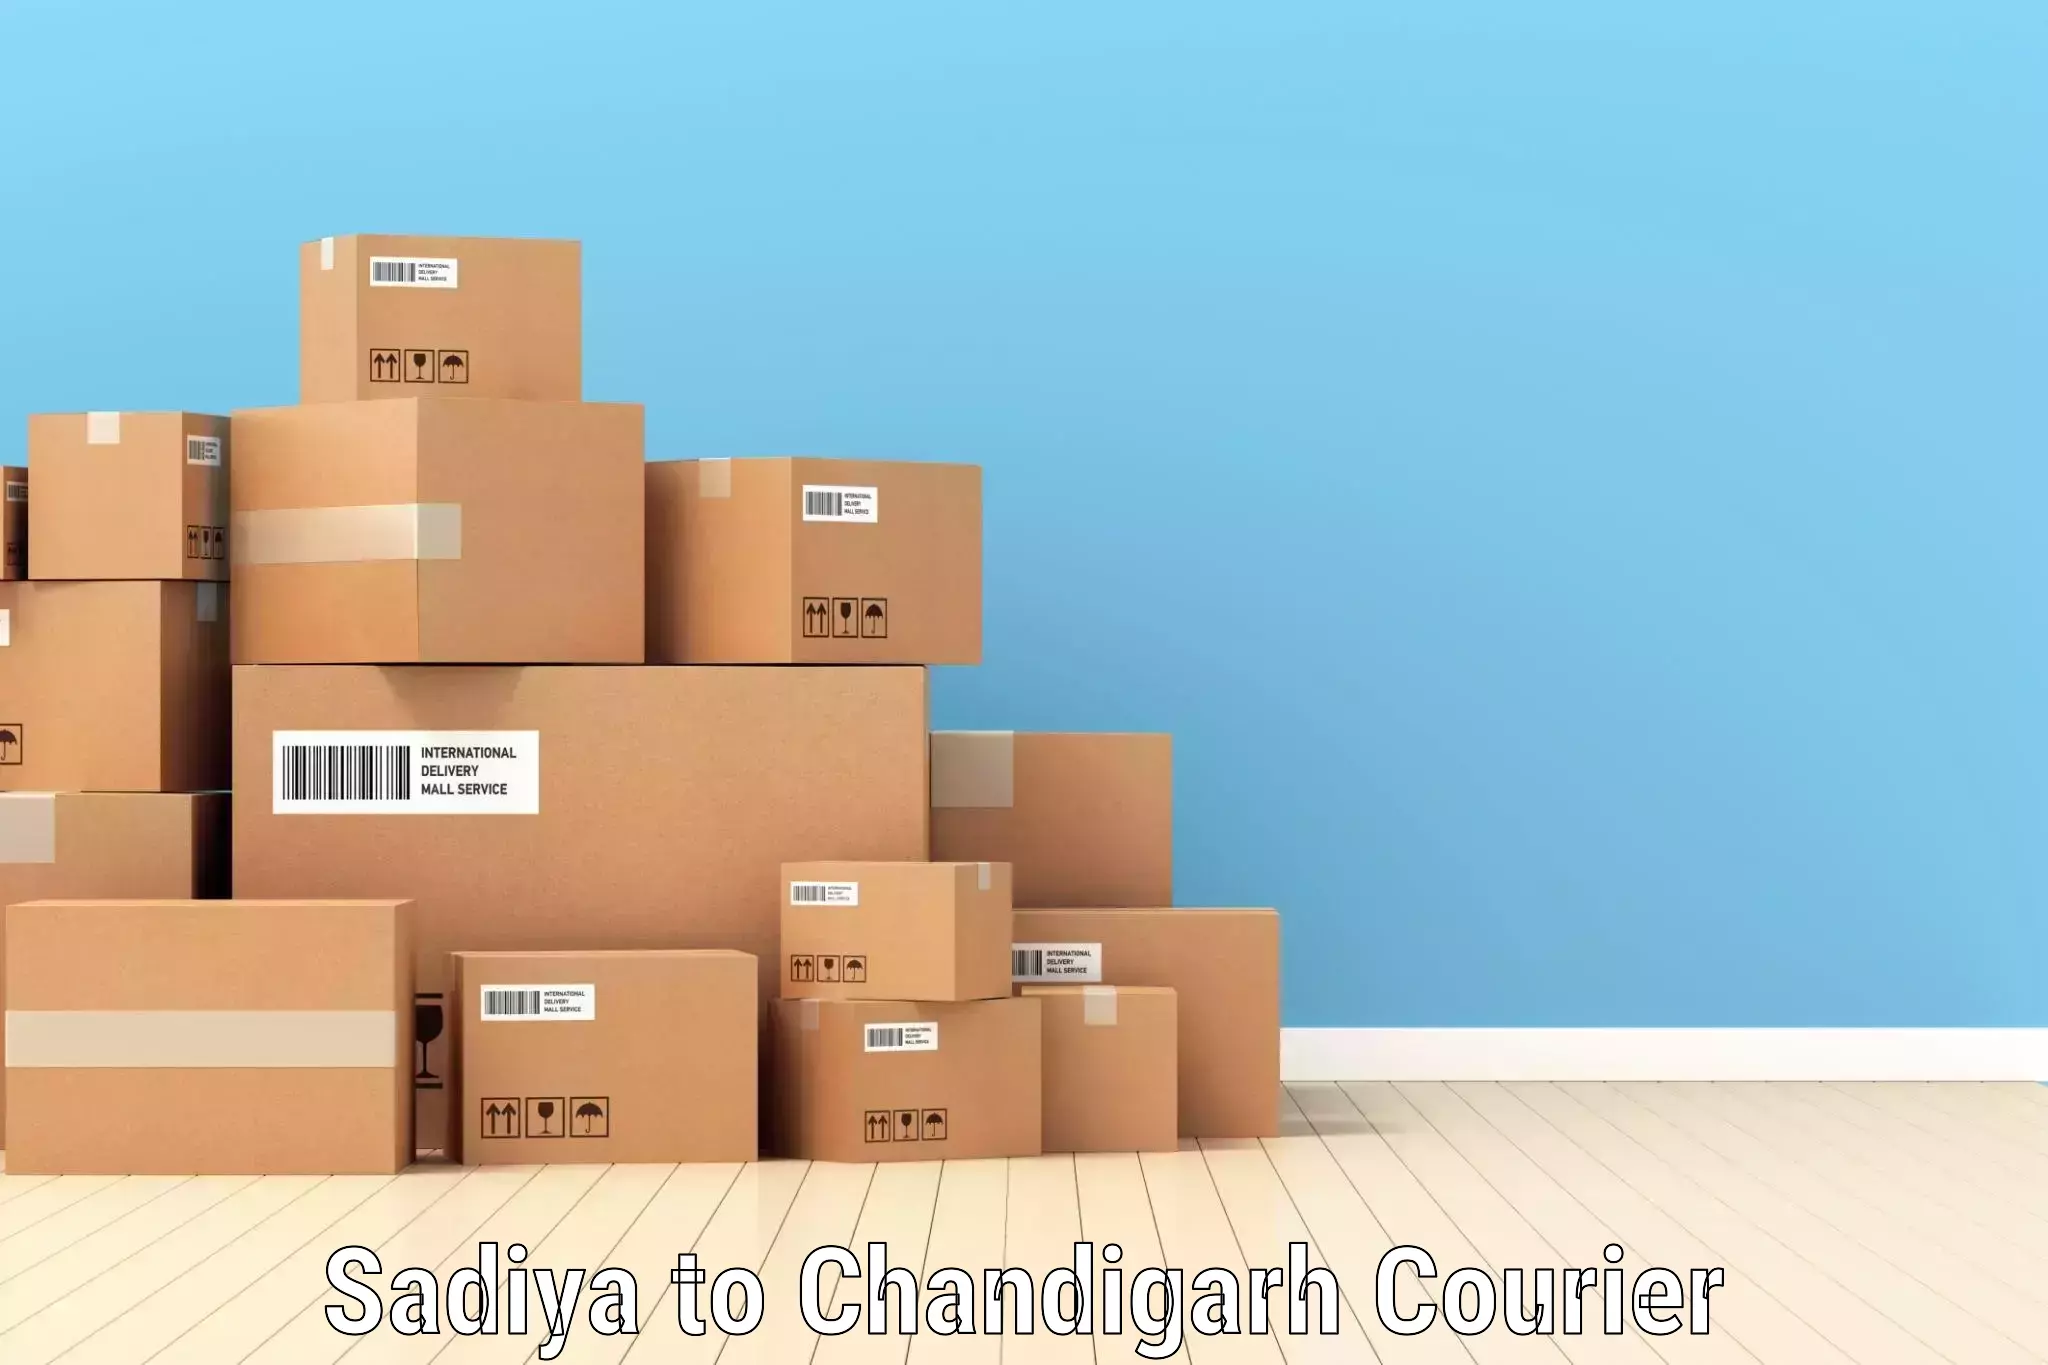 Customized shipping options in Sadiya to Chandigarh